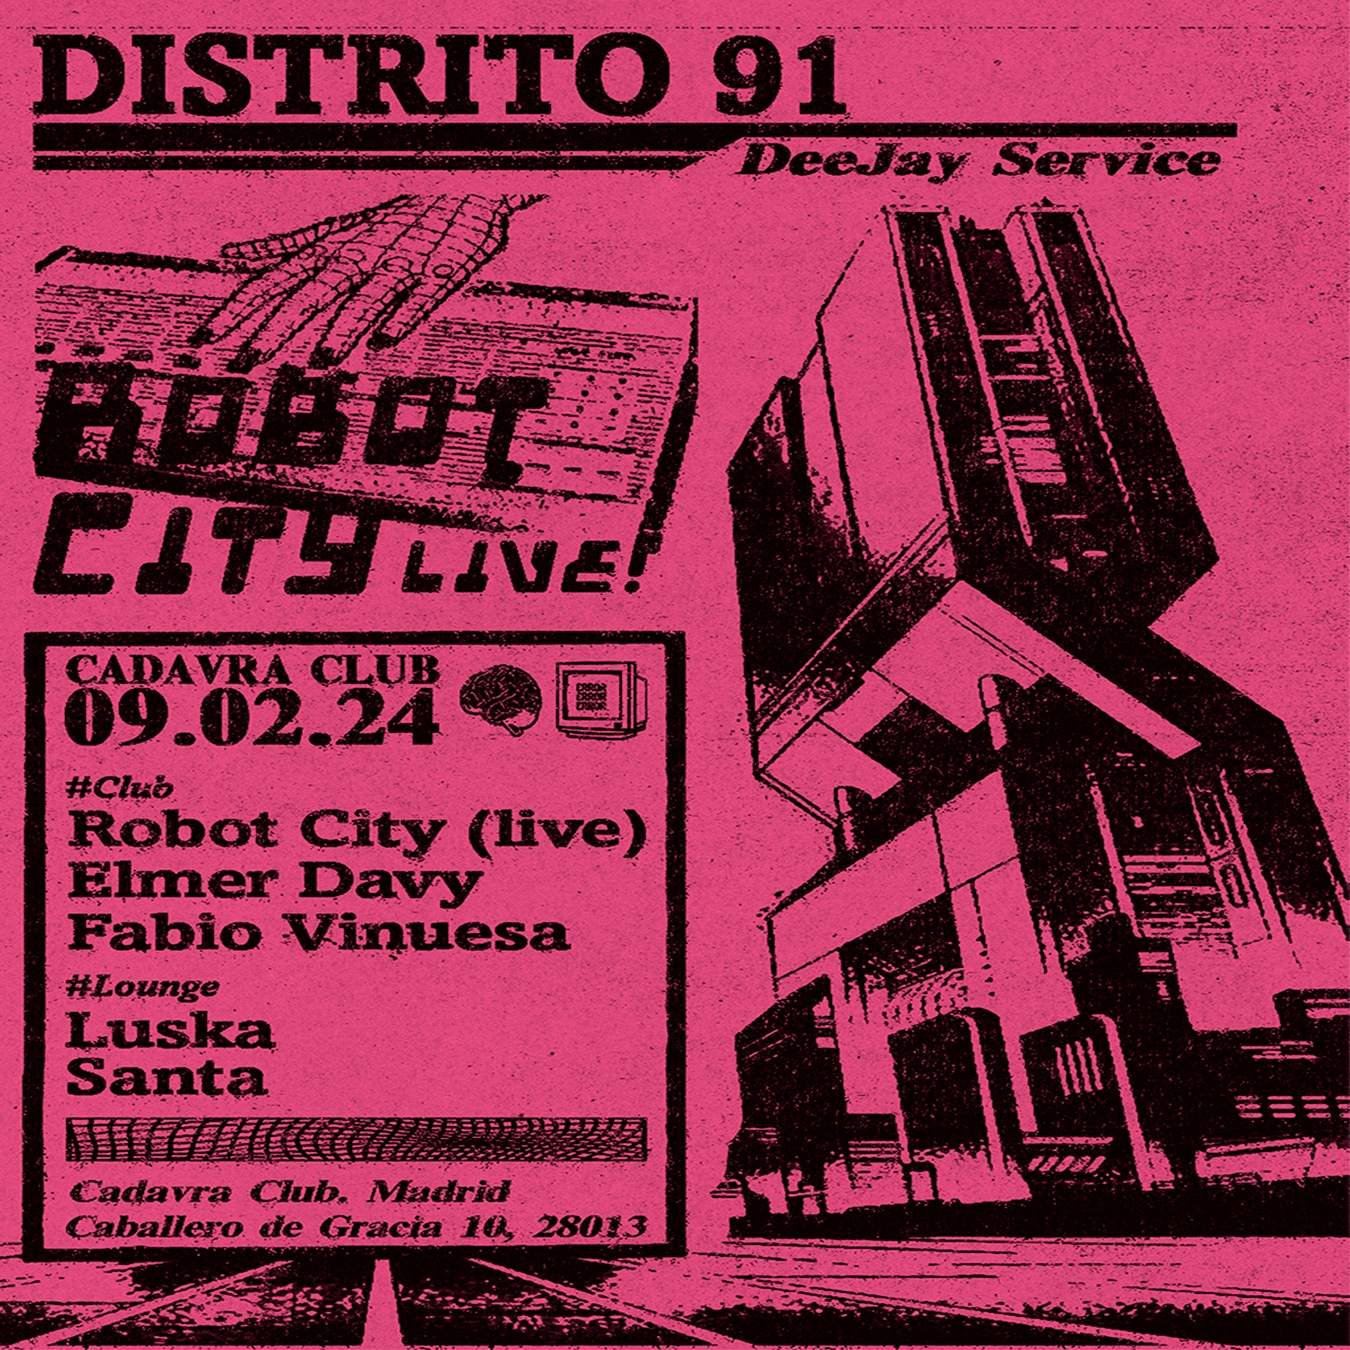 DISTRITO 91 invites Robot City (live) - Página frontal